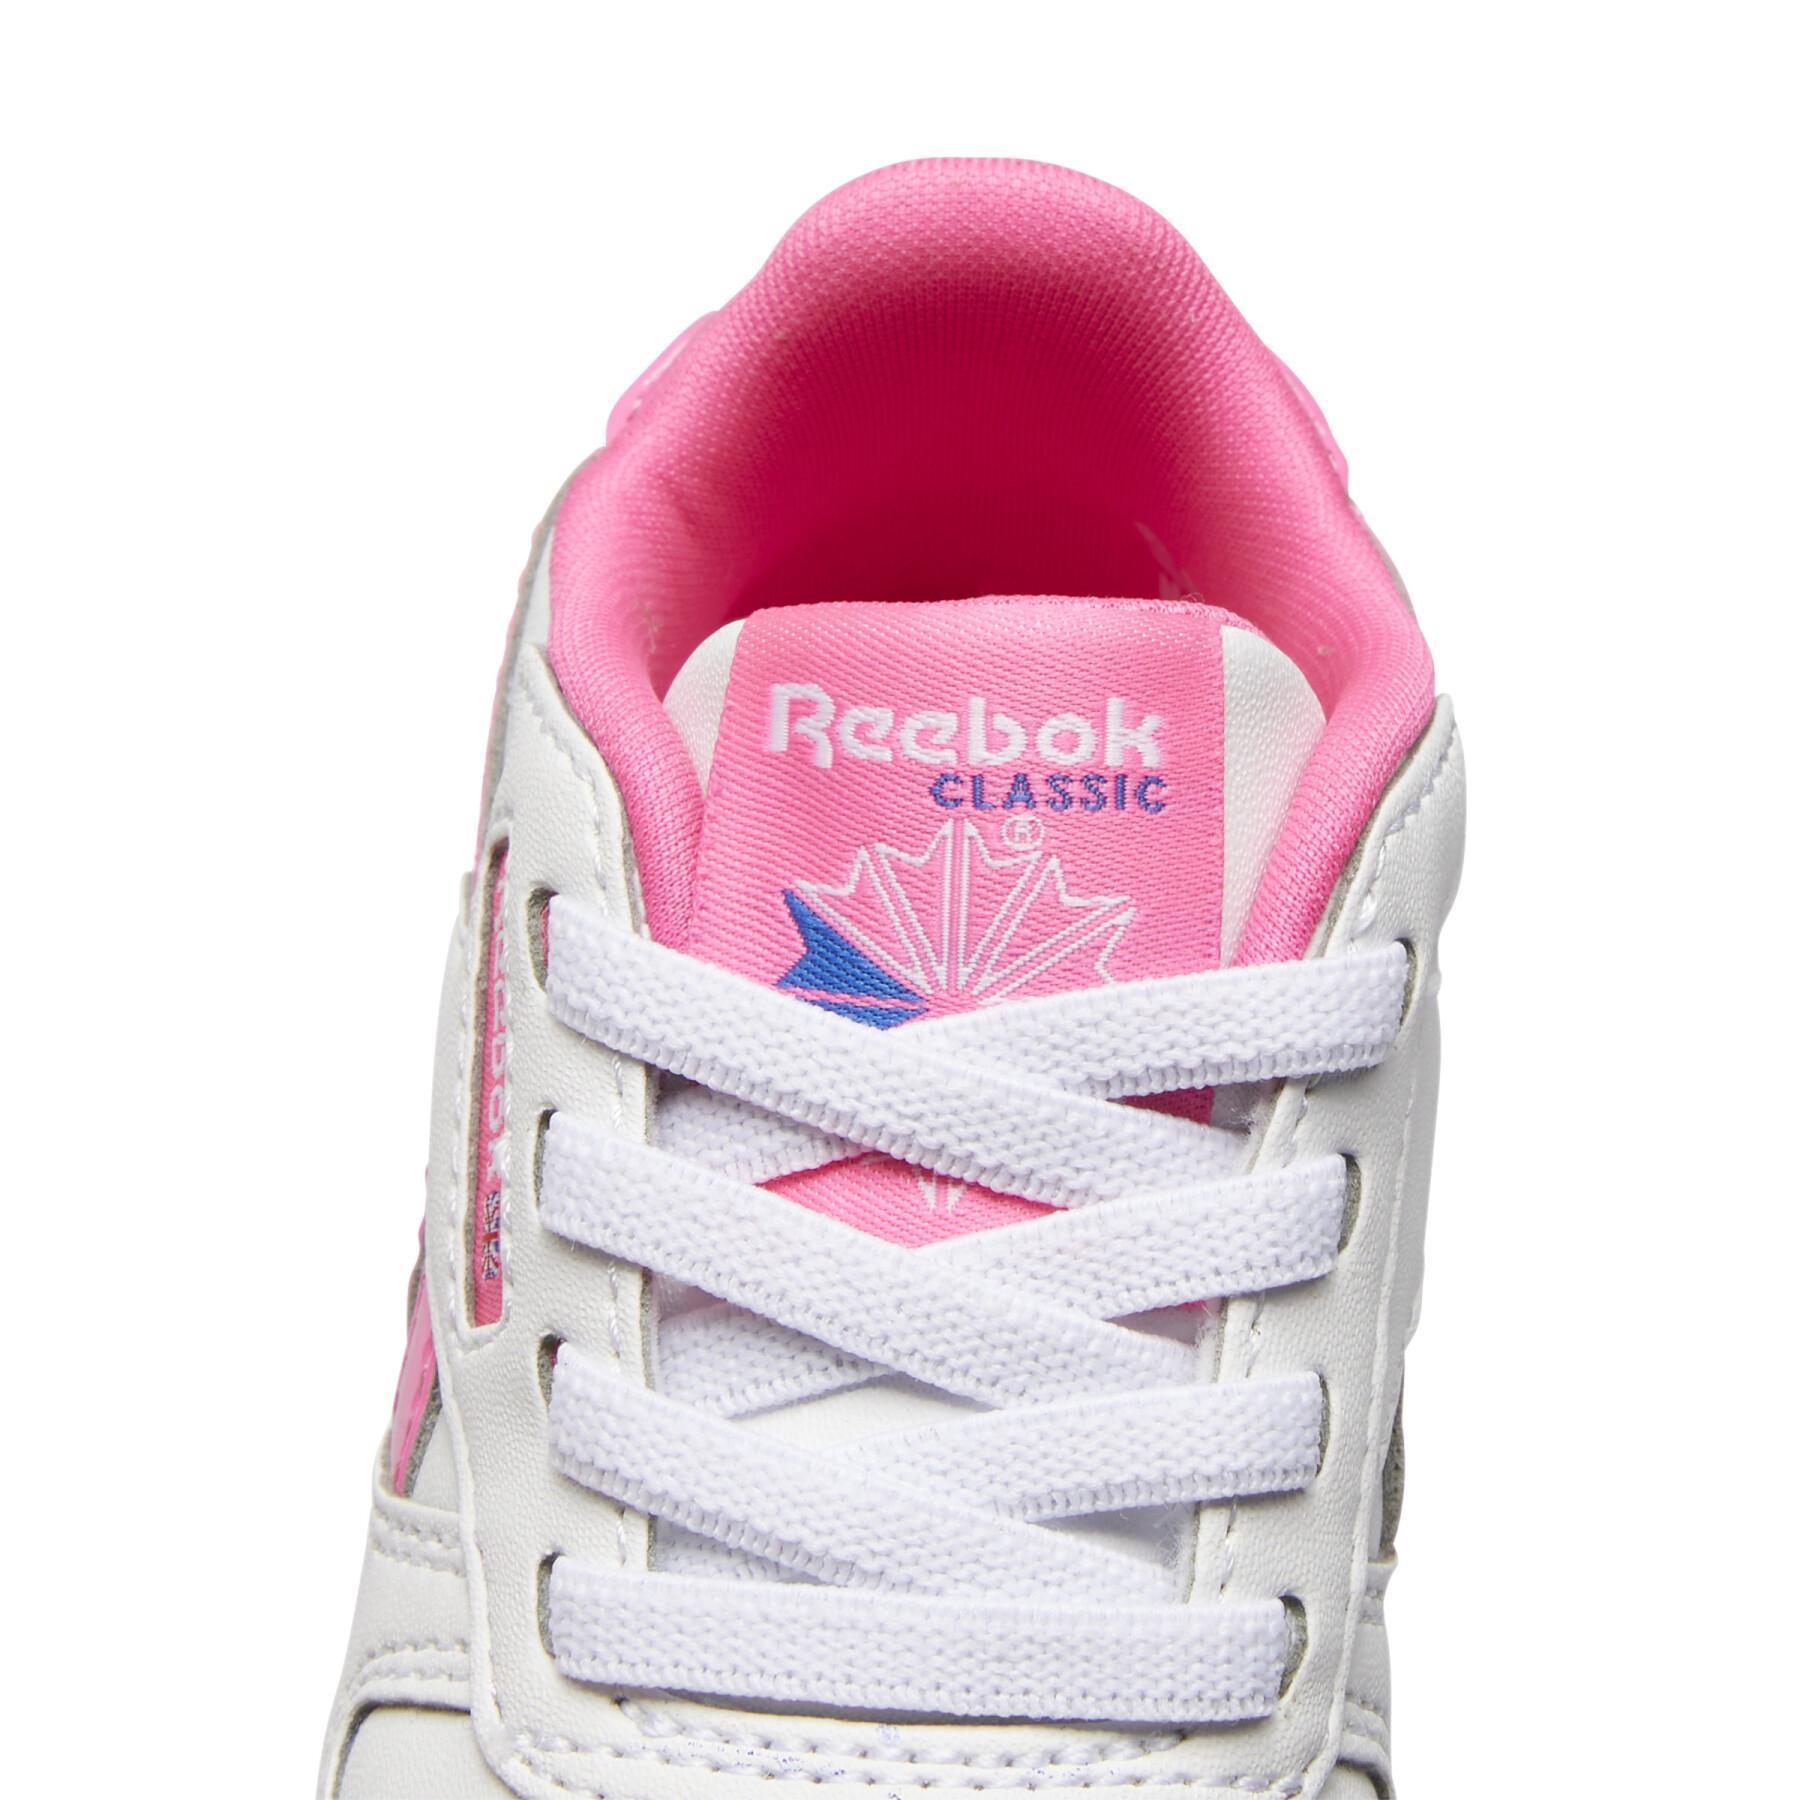 Zapatillas de cuero clásicas para niños Reebok Classics Step 'n' Flash